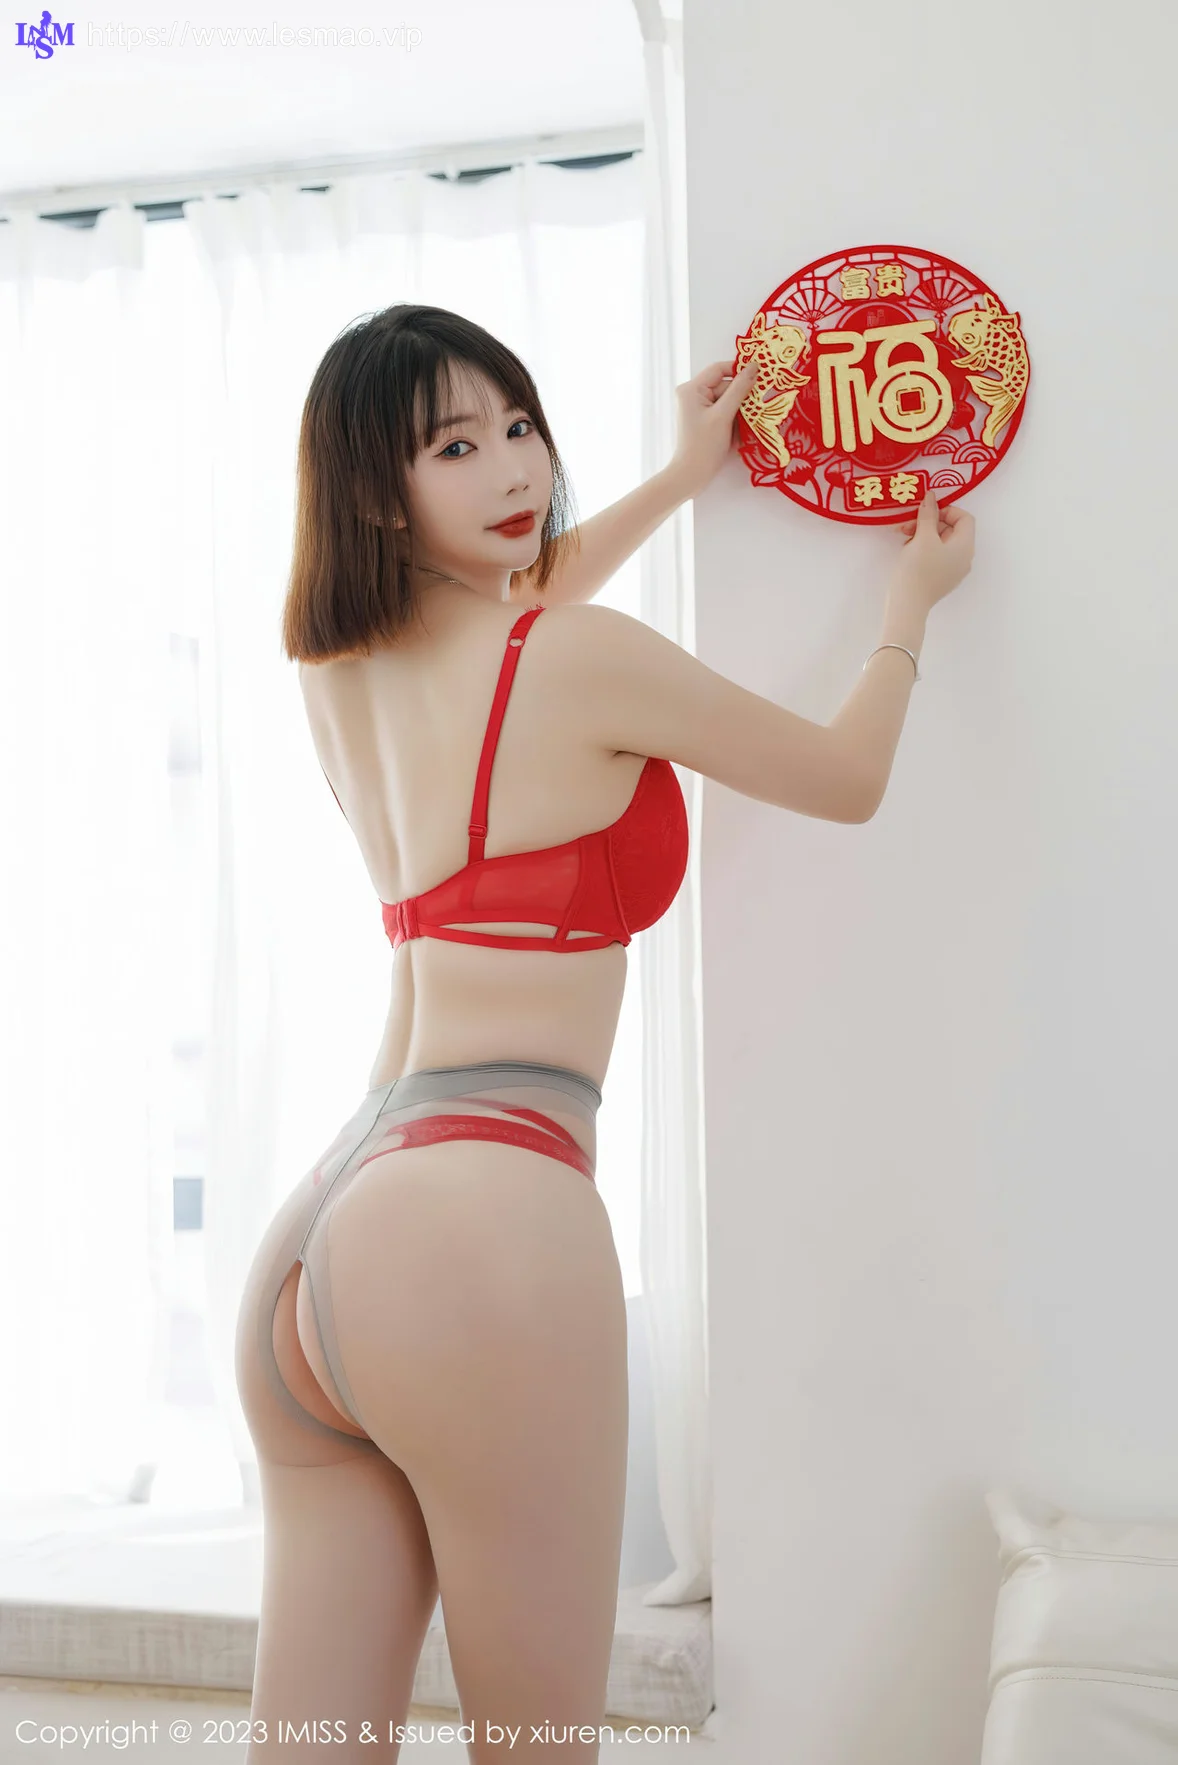 IMiss 爱蜜社 Vol.716 Evon陈赞之 红色旗袍最新性感写真 - 2